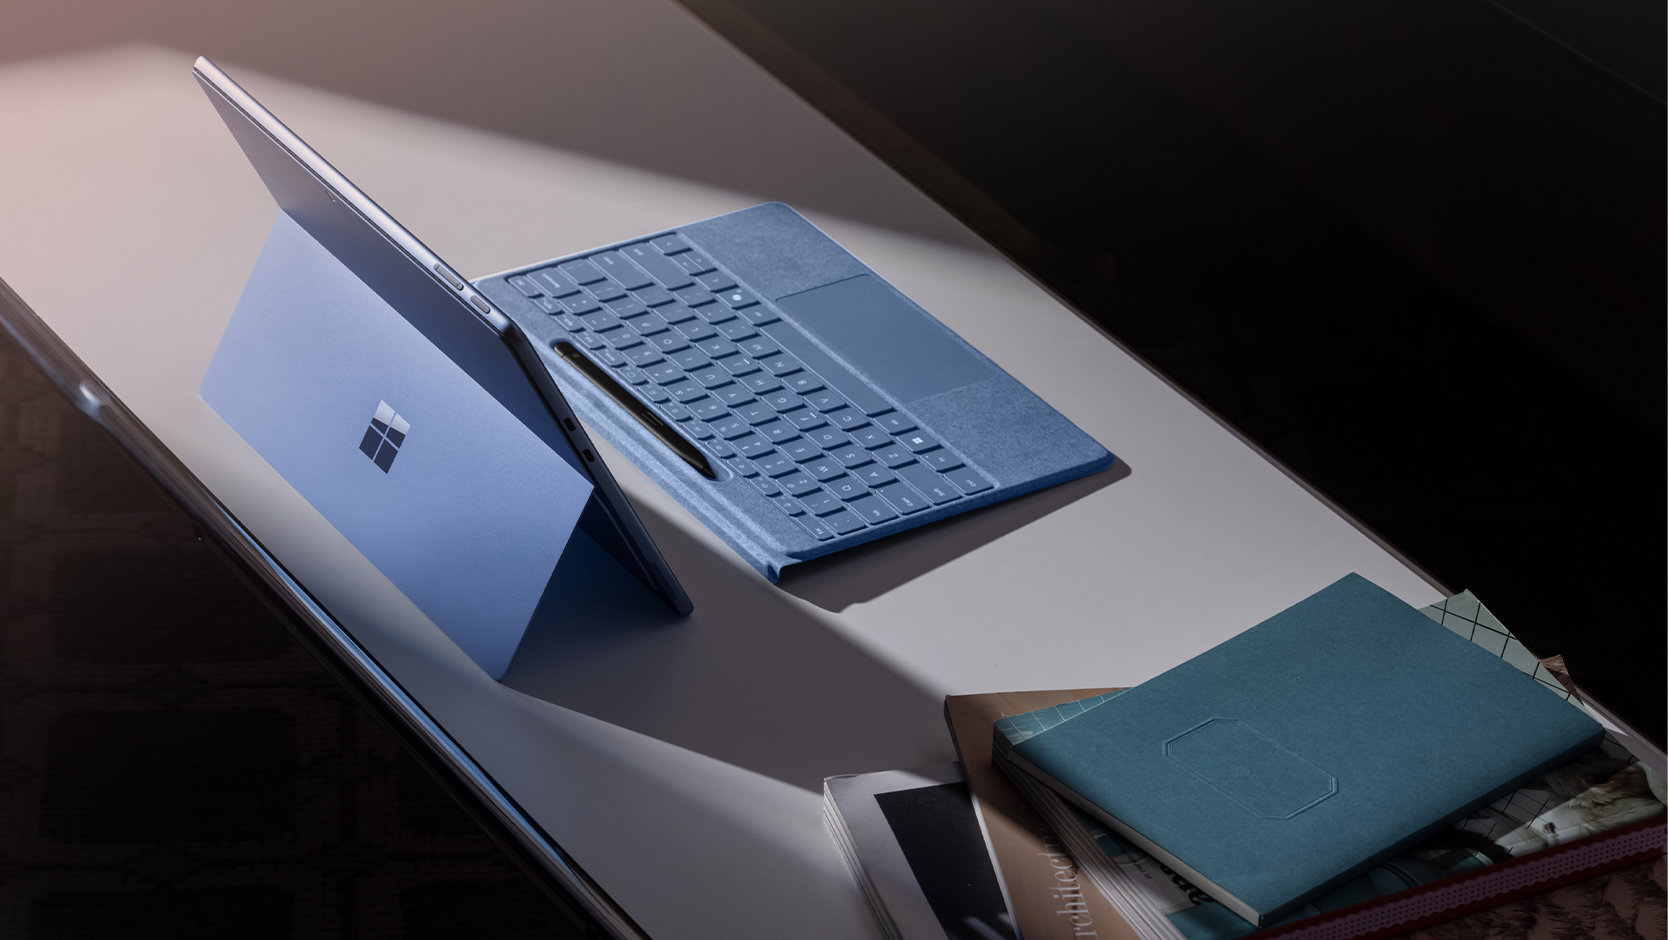 Um Teclado Flex para Surface Pro com Slim Pen destacado de um dispositivo Surface sobre uma mesa com outros itens diversos.